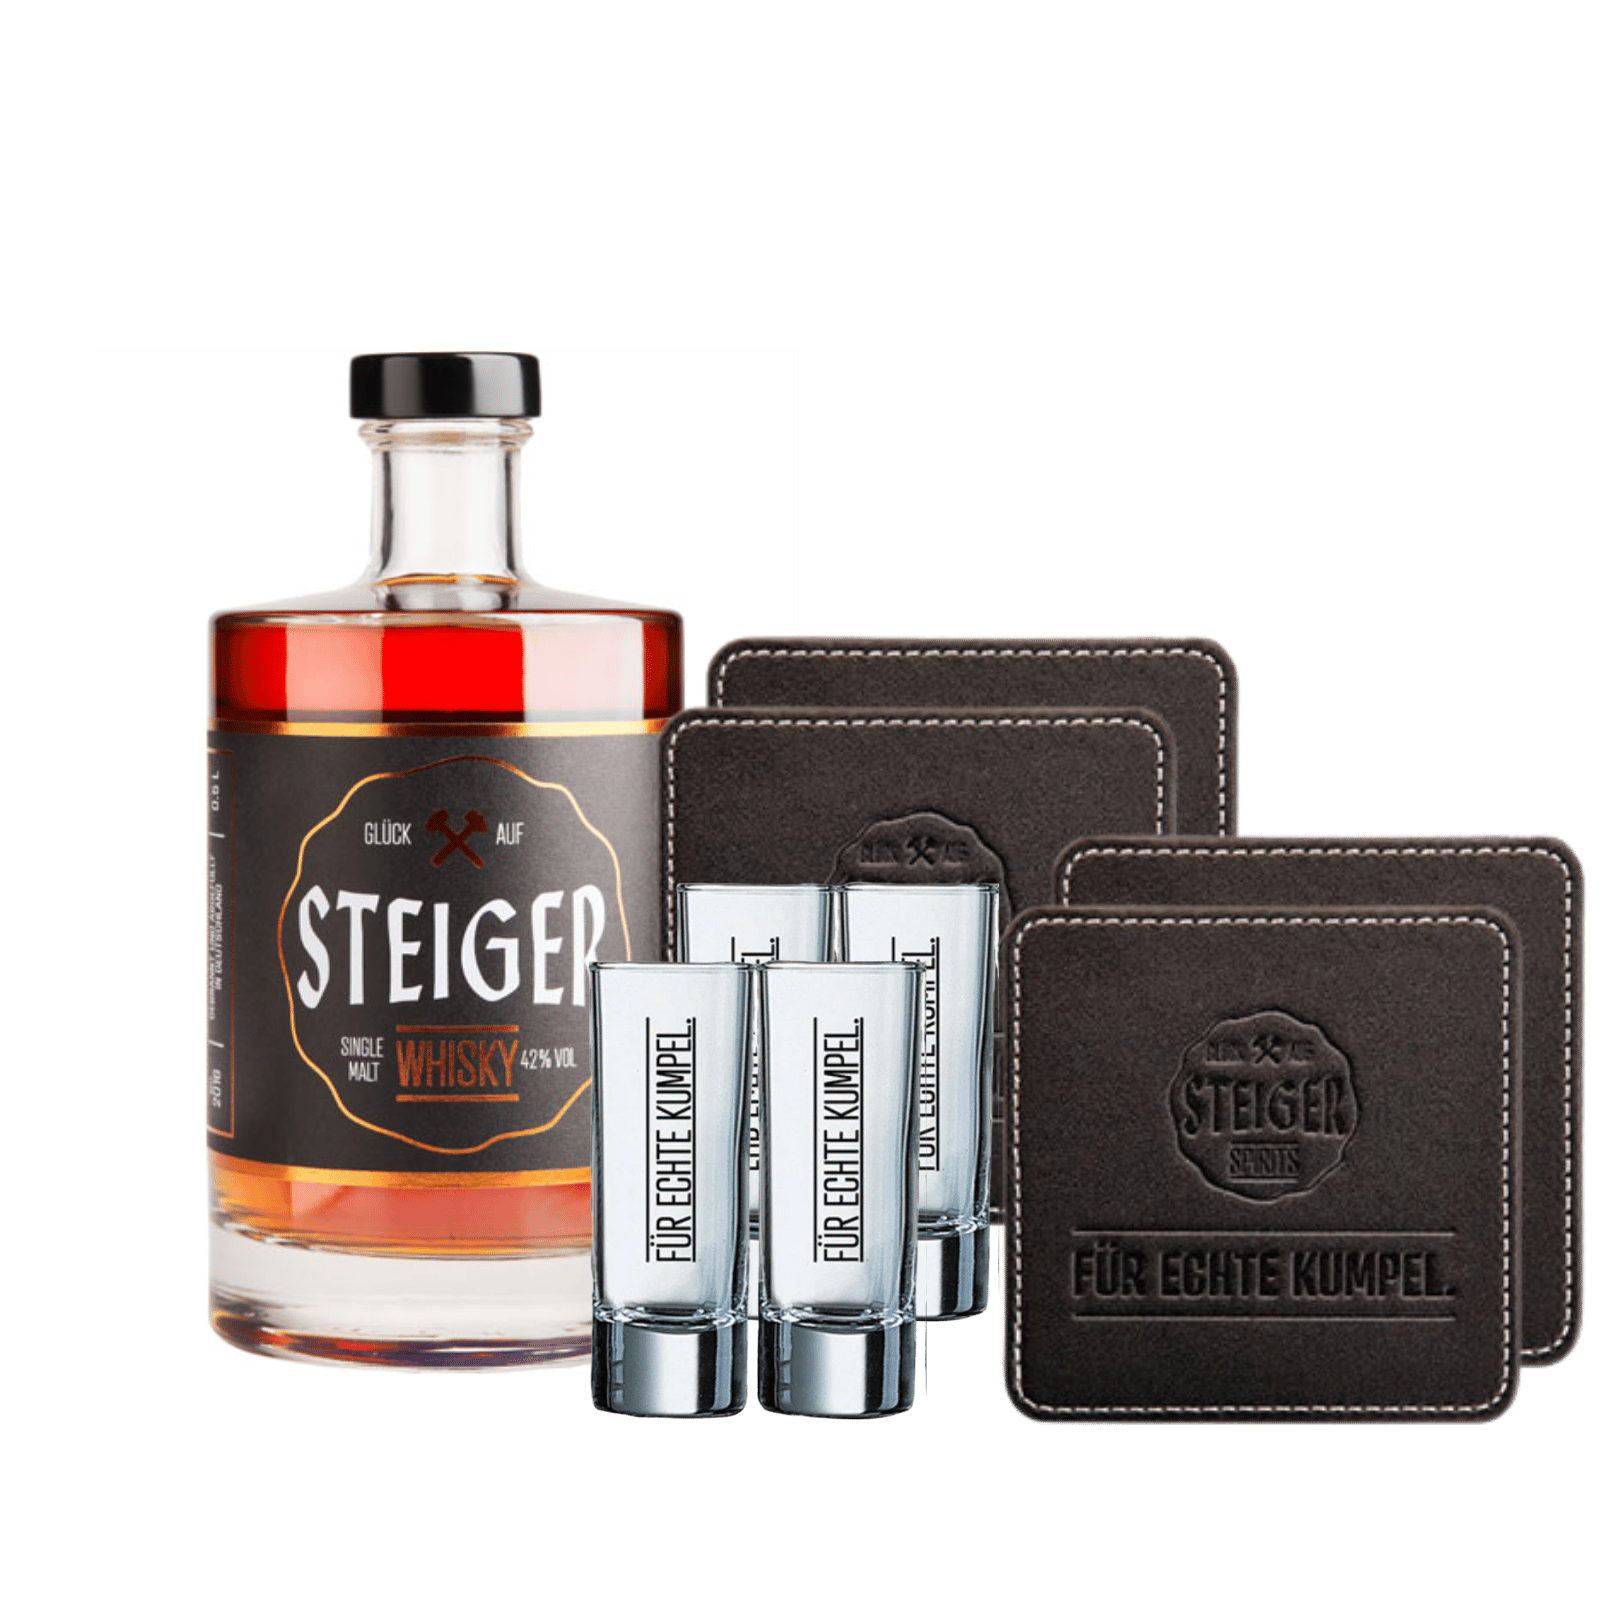 Steiger Whisky - Single Malt inkl. Gläser und Untersetzer